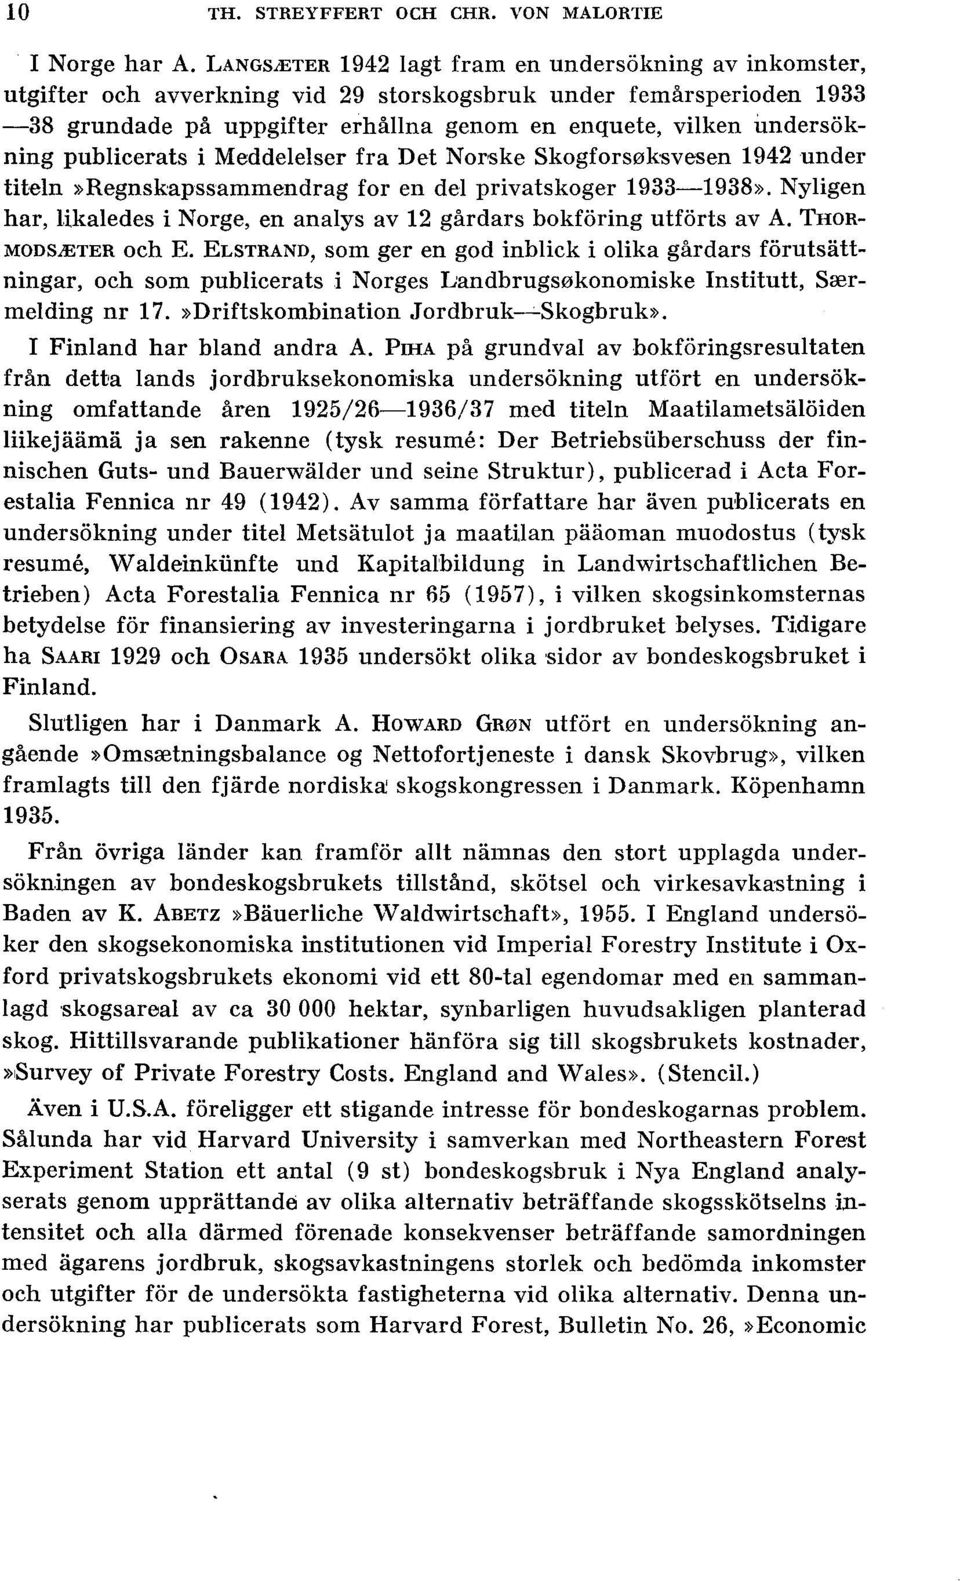 pubicerats i Meddeeser fra Det Norske Skogfors0ksvesen 1942 under titen»regnskapssammendrag for en de privatskoger 1933-1938».